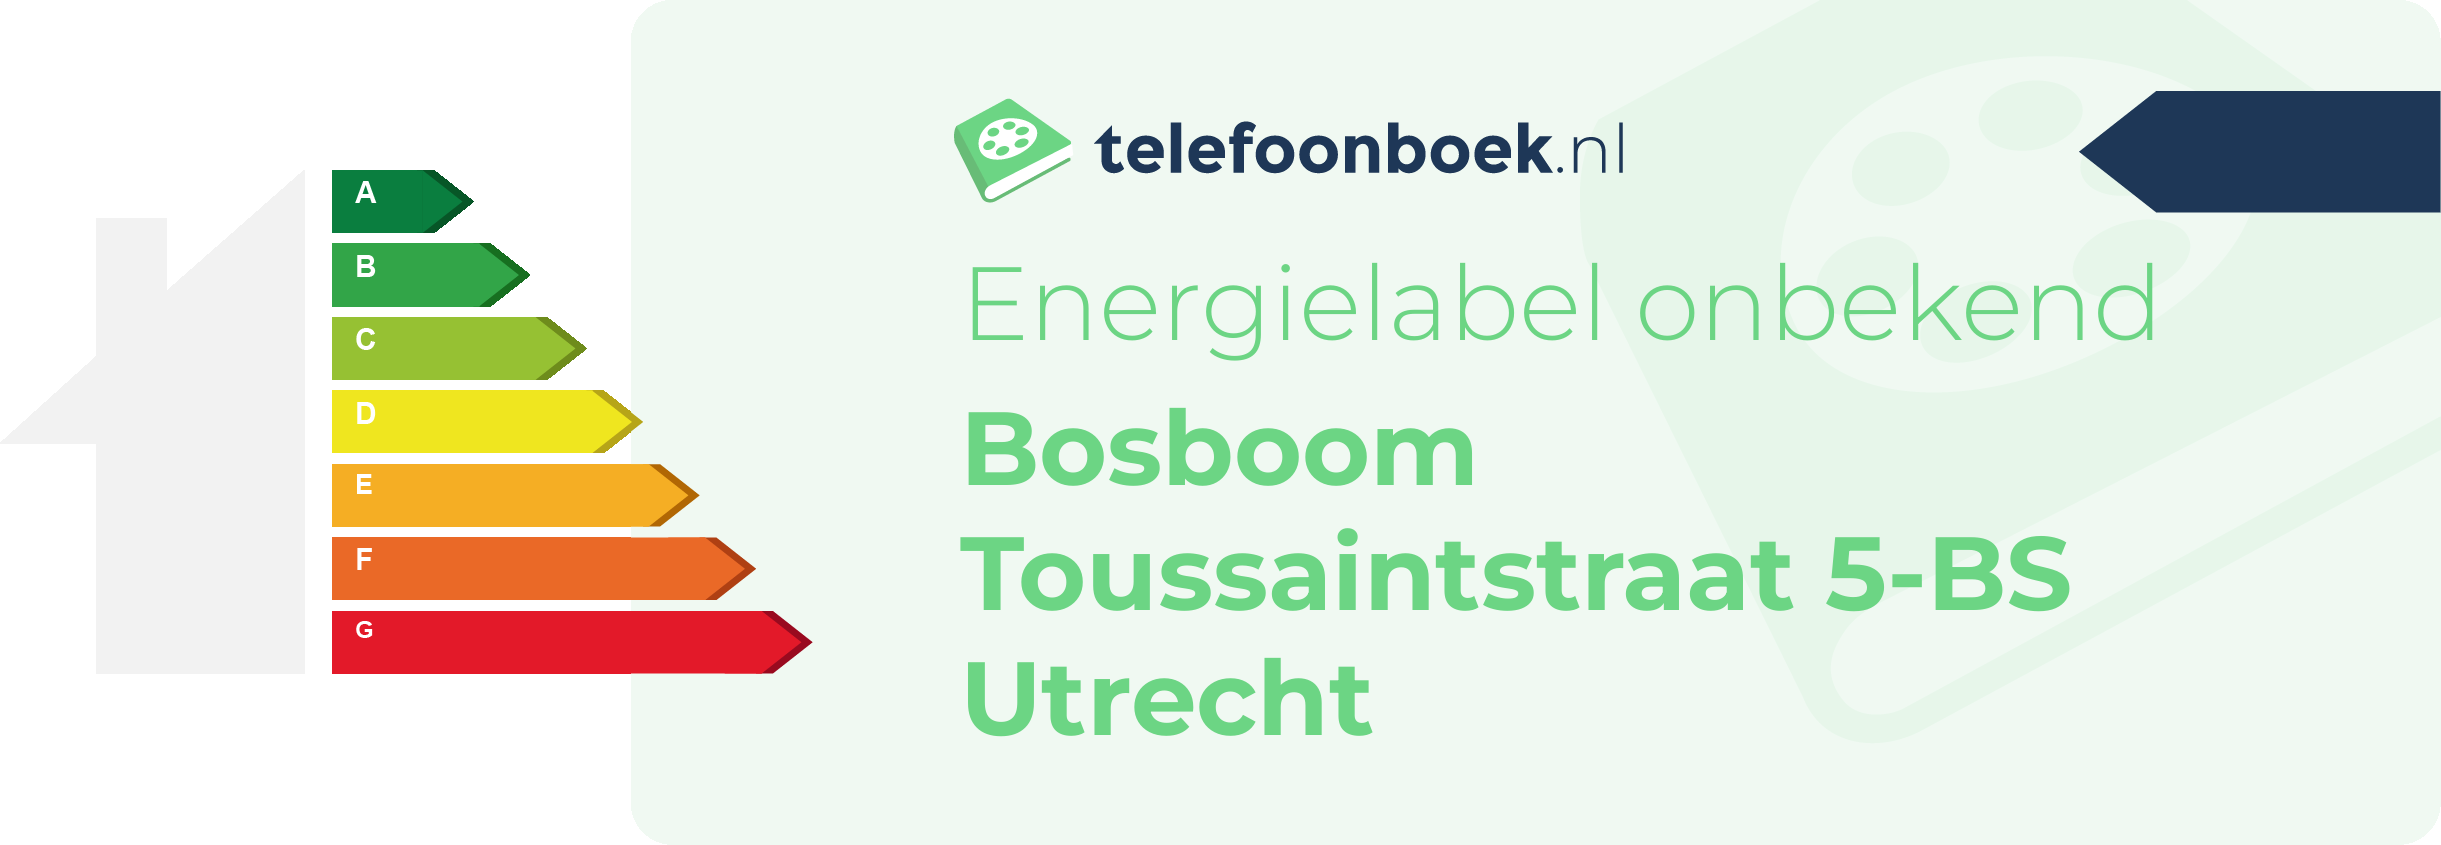 Energielabel Bosboom Toussaintstraat 5-BS Utrecht